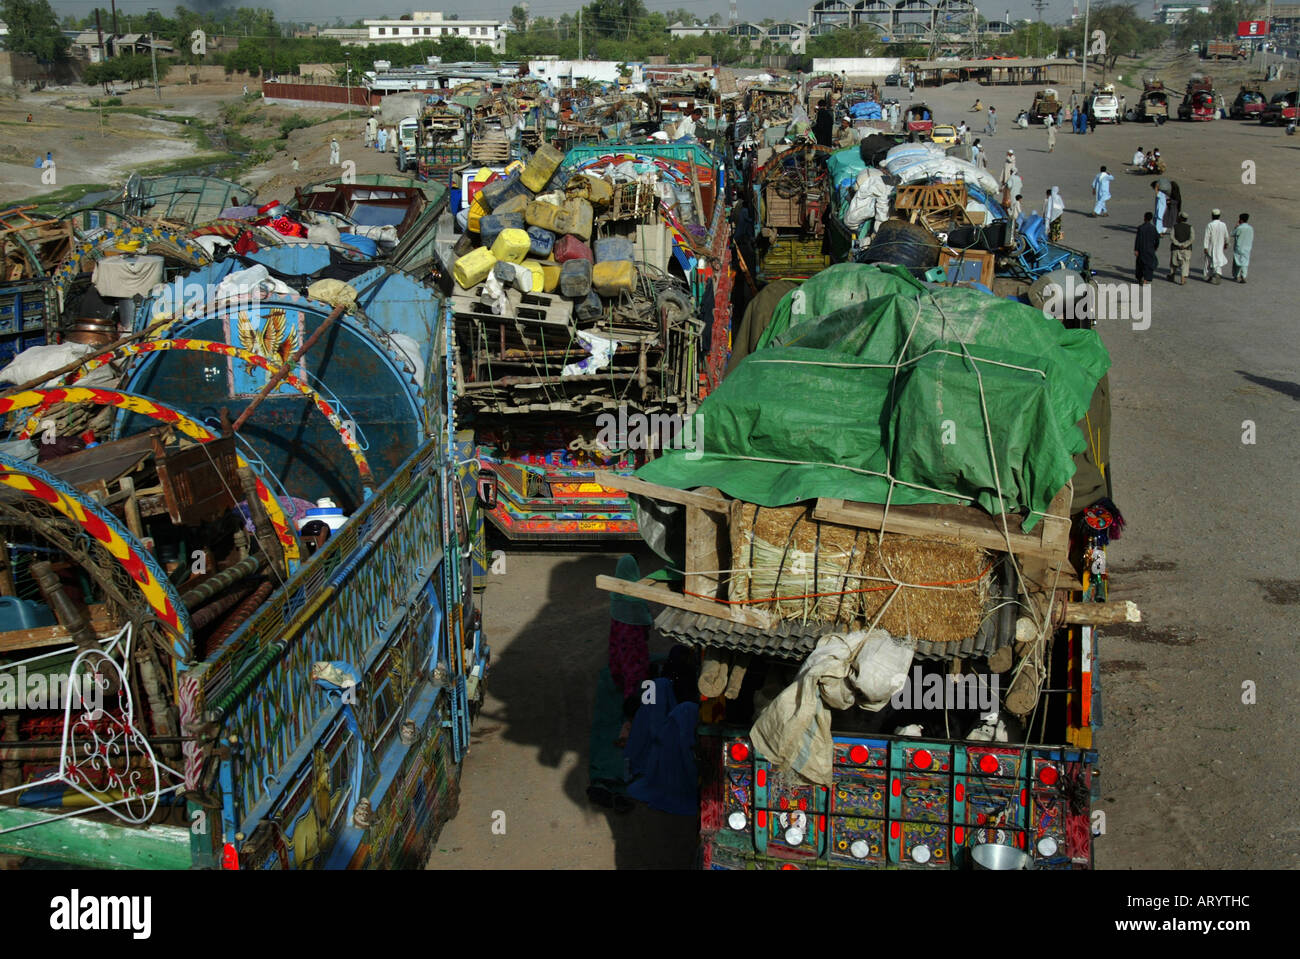 Les réfugiés afghans à Peshawar sont forcés de retourner en Afghanistan Banque D'Images